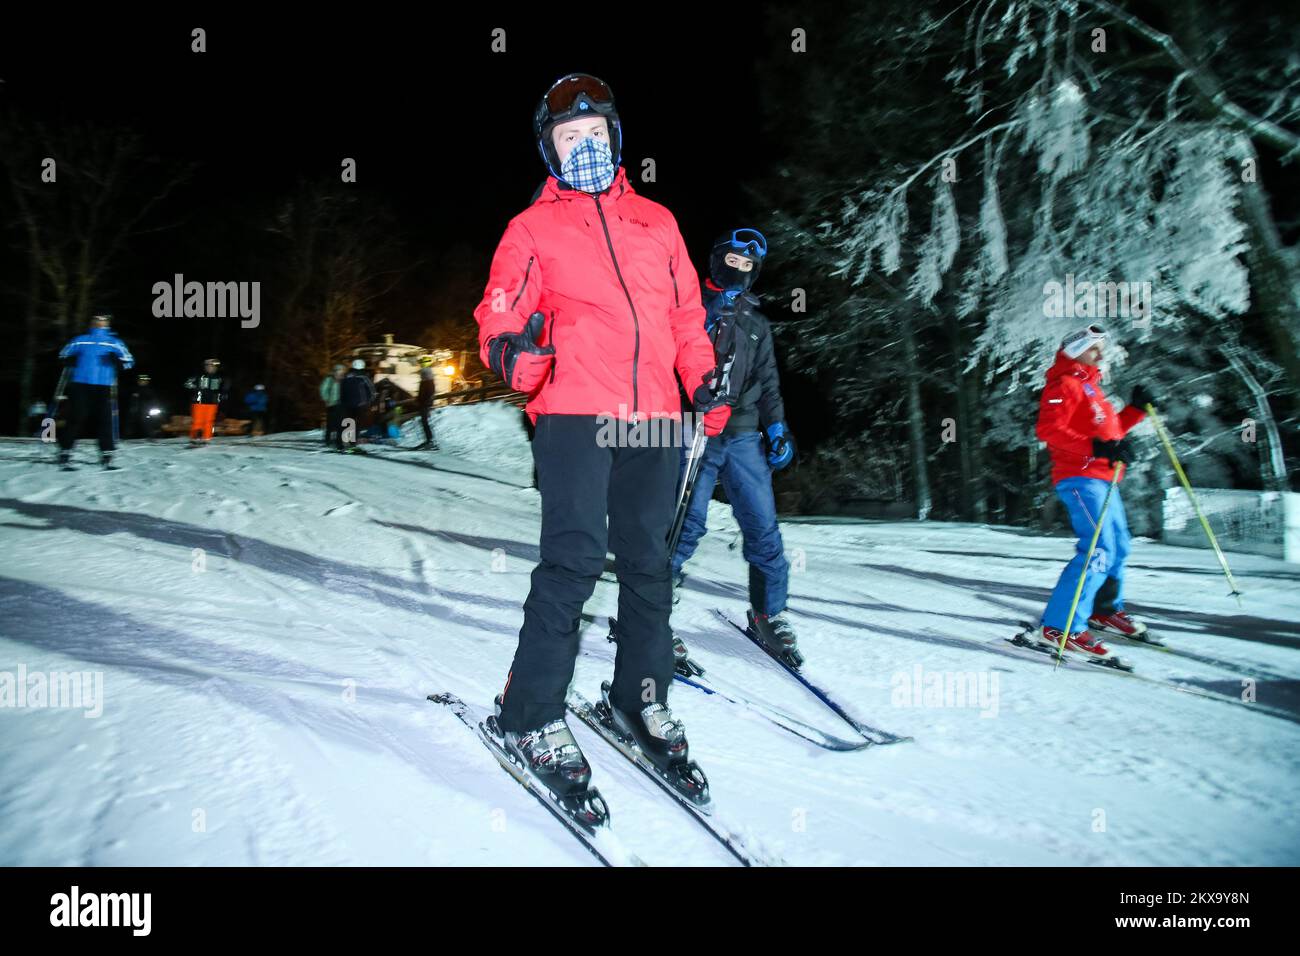 18.12.2018., Zagreb, Croatie - la traditionnelle séance de ski nocturne gratuite ce soir a officiellement ouvert la saison de ski 2018/19 sur les pistes de ski de Sljeme dans la capitale croate Zagreb. Les habitants et les touristes ont été doués d'une séance gratuite sur les pistes mardi soir par la ville de Zagreb dans ce qui a été une ouverture traditionnelle à la nouvelle saison. À partir du mercredi 19 décembre 2018, la piste rouge sera ouverte aux skieurs de loisir et restera ouverte tous les jours de 9 h à 4 h, tandis que tous les mardis et jeudis de 7 h à 10 h, elle sera ouverte pour le ski de nuit. Photo : Filip Kos/PIXSELL Banque D'Images